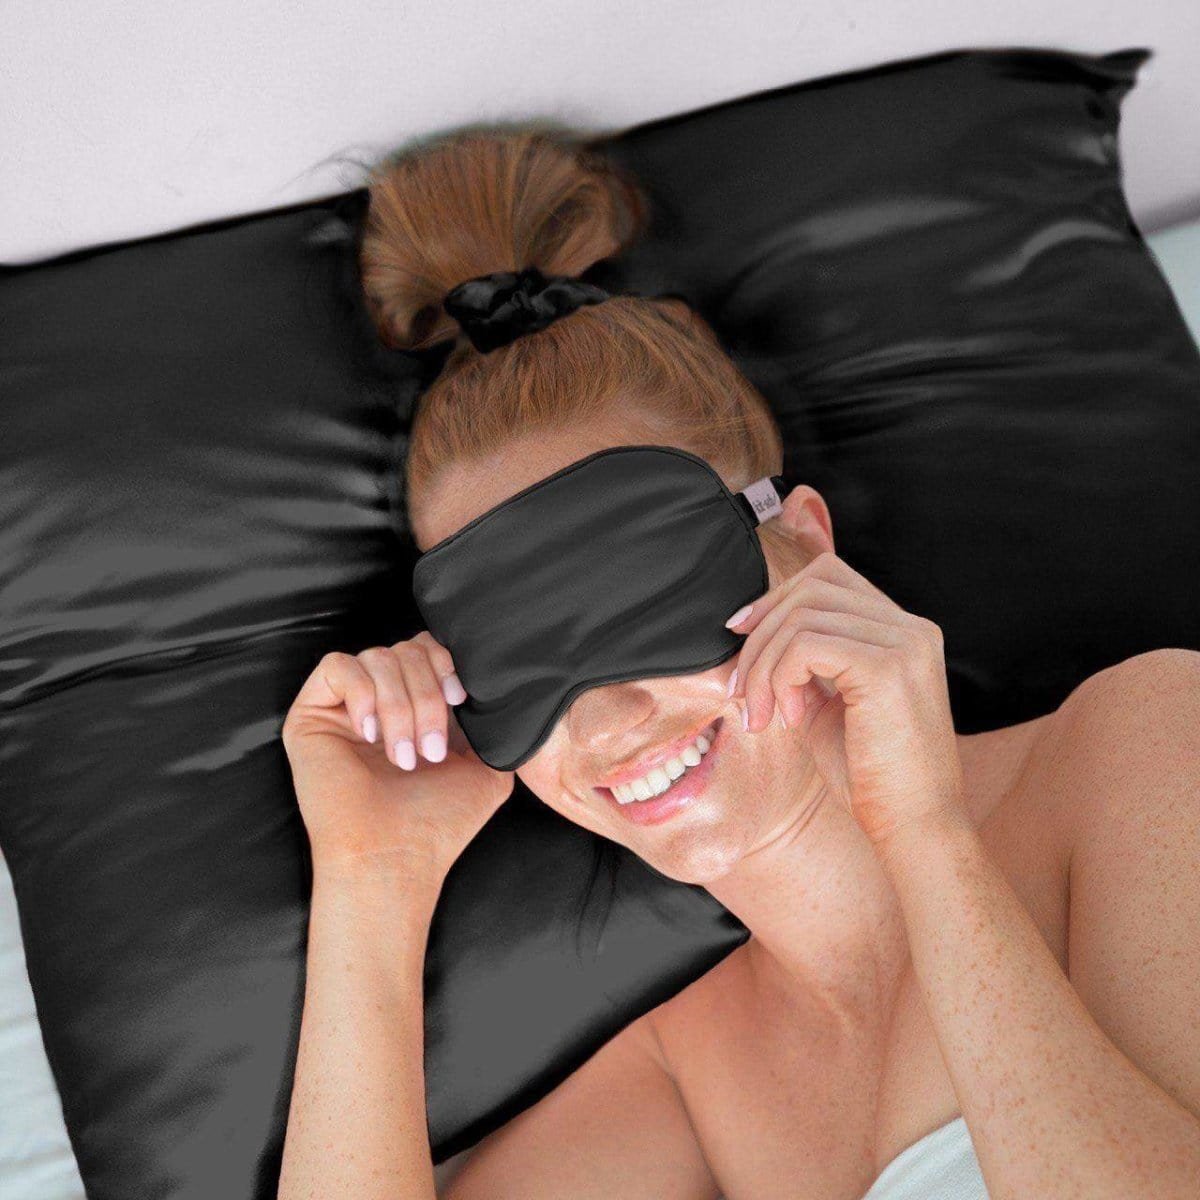 Luxe Satin Pillowcase & Eye Mask Bundle - Black